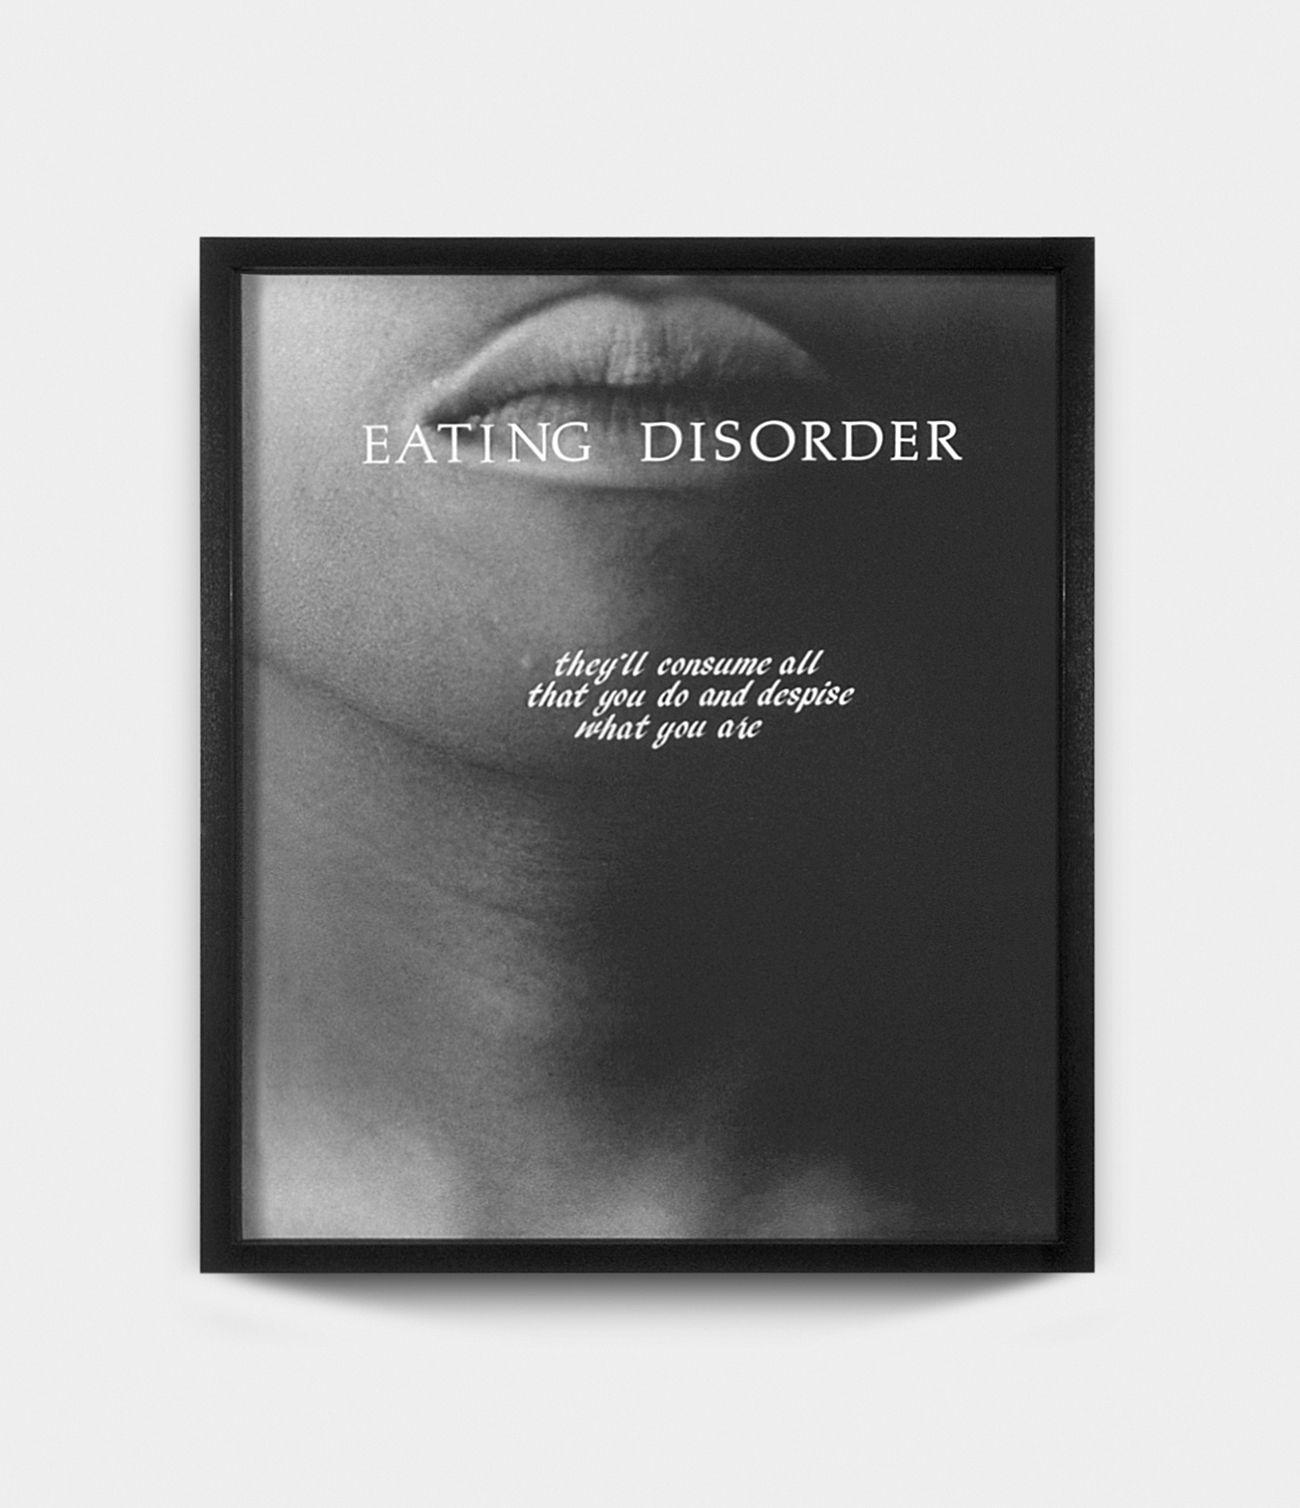 Eating Disorder, 1992